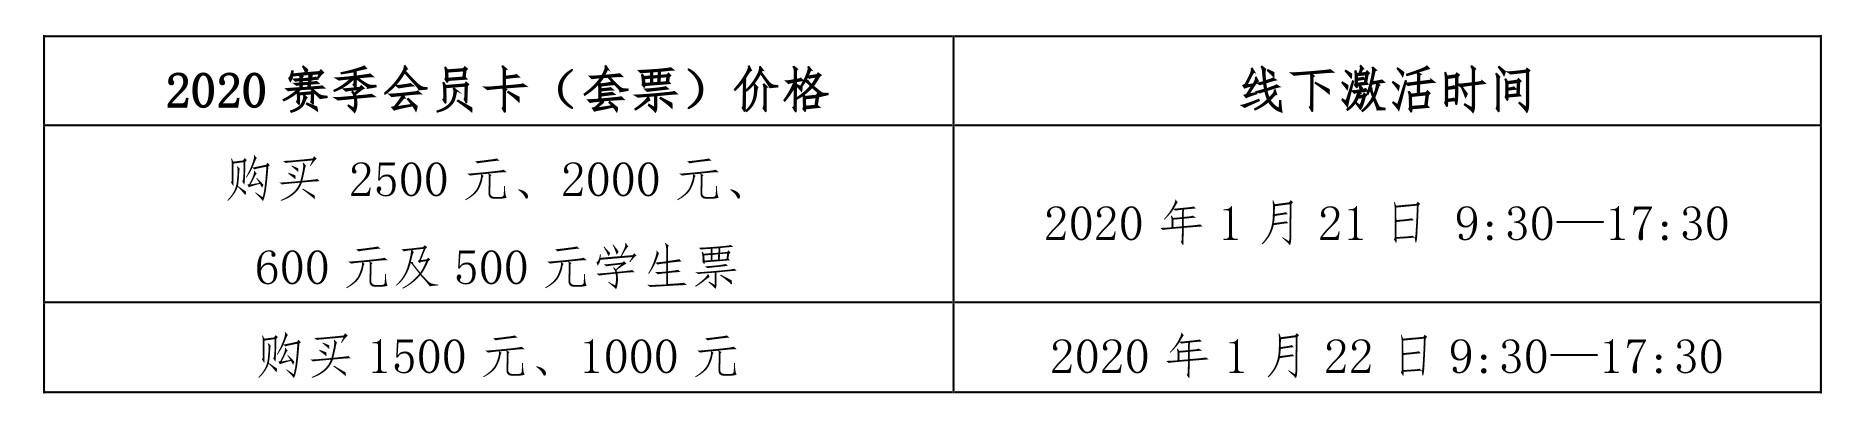 中超足球宝贝充值 广州恒大淘宝足球俱乐部2020赛季会员卡(3)